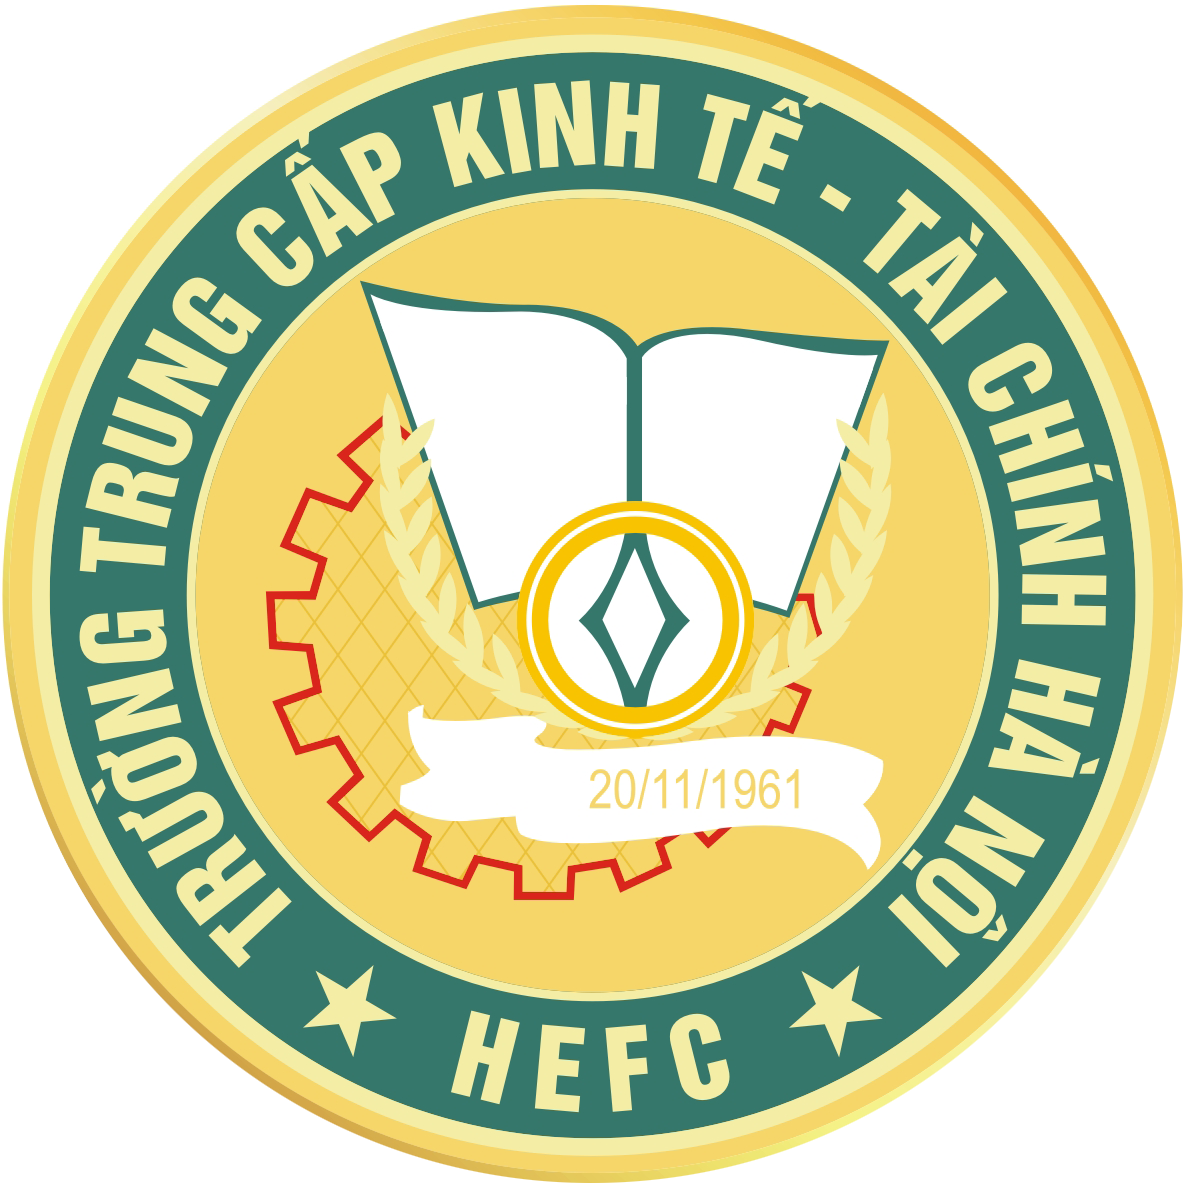 hefc.edu.vn - Trường Trung Cấp Kinh Tế - Kỹ thuật và Công nghệ Hà Nội